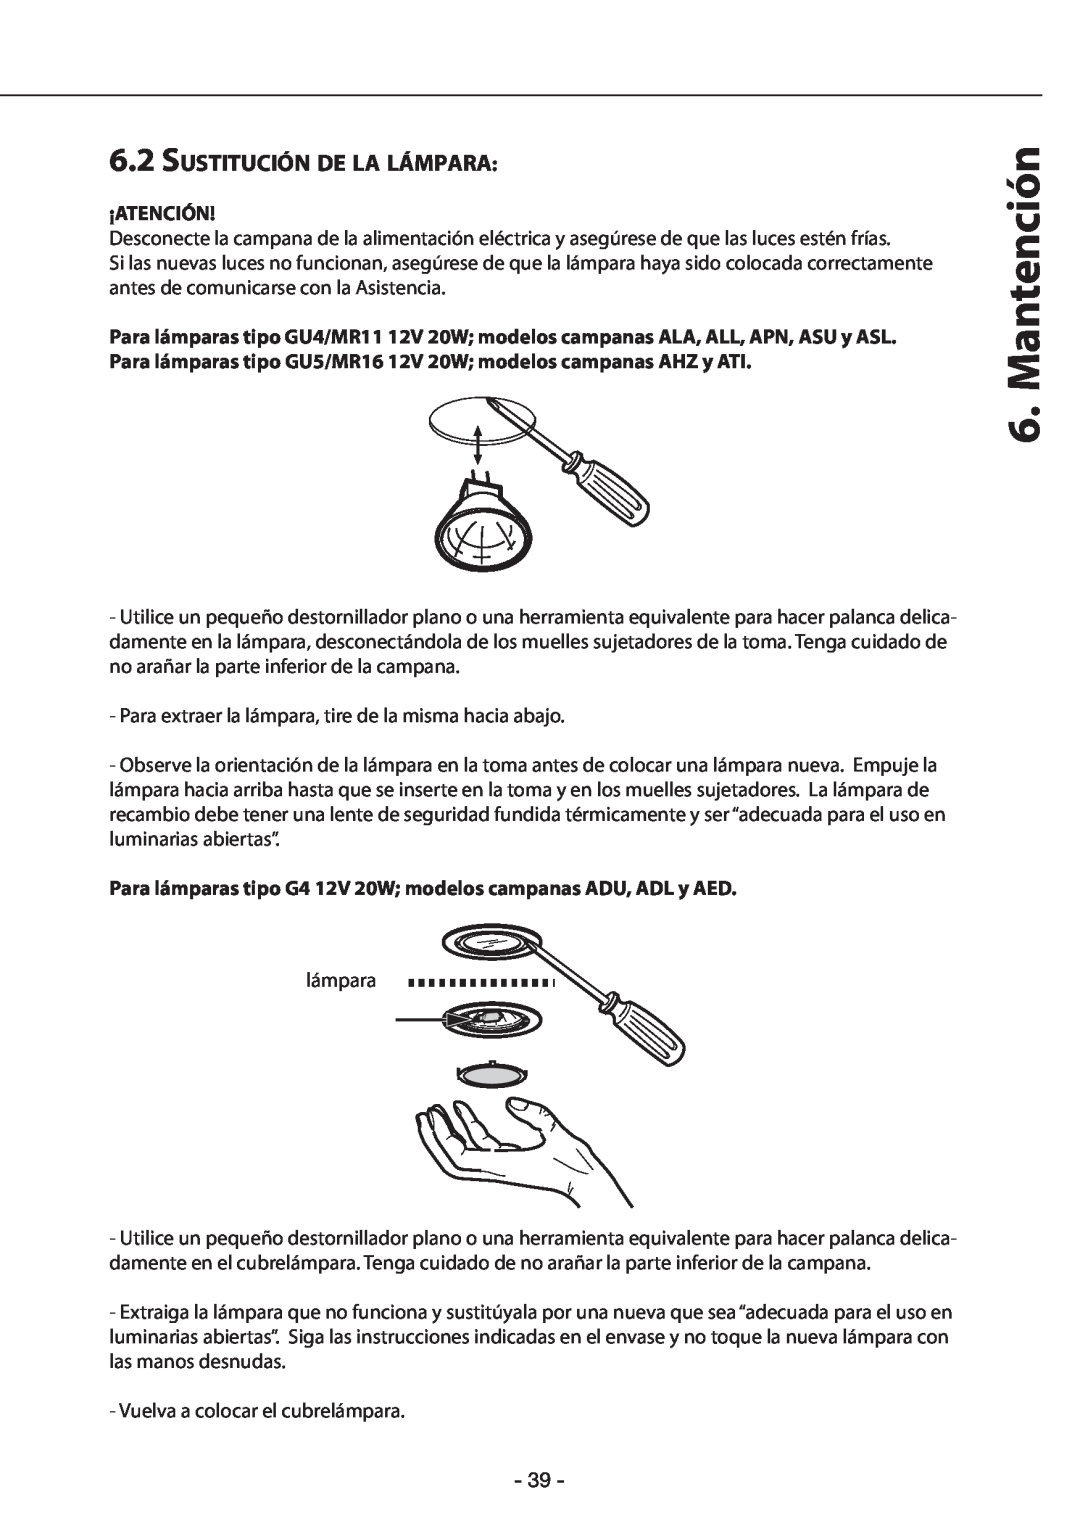 Zephyr GU4/MR11, GU5/MR16 manual 6.2SUSTITUCIÓN DE LA LÁMPARA, Mantención, ¡Atención 